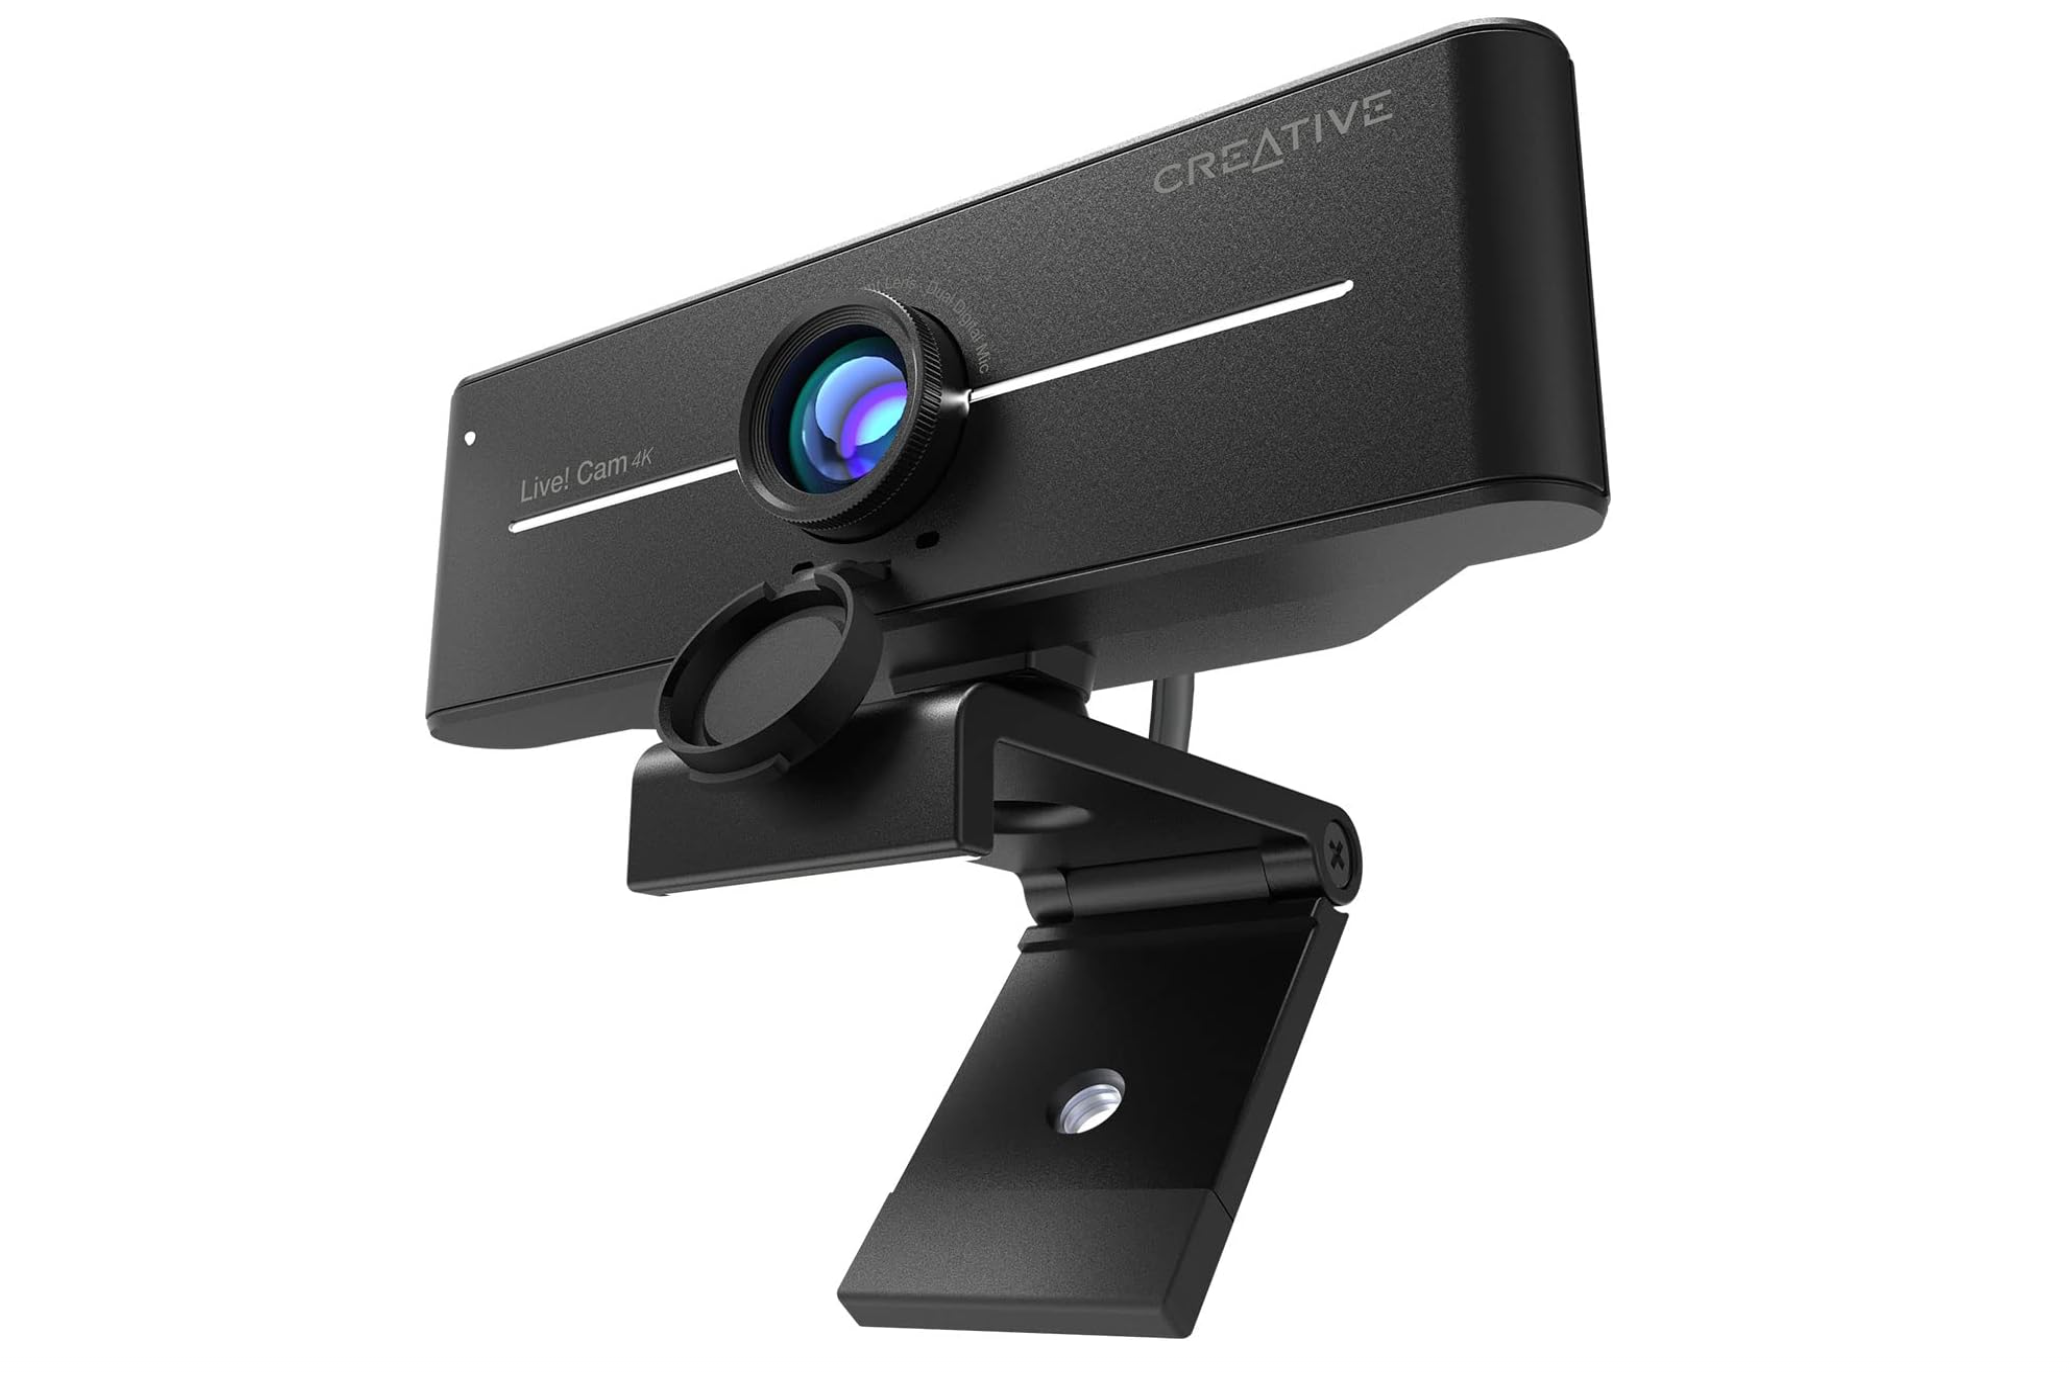 Yaratıcı Canlı! Cam Sync 4k - En iyi bütçeye uygun web kamerası